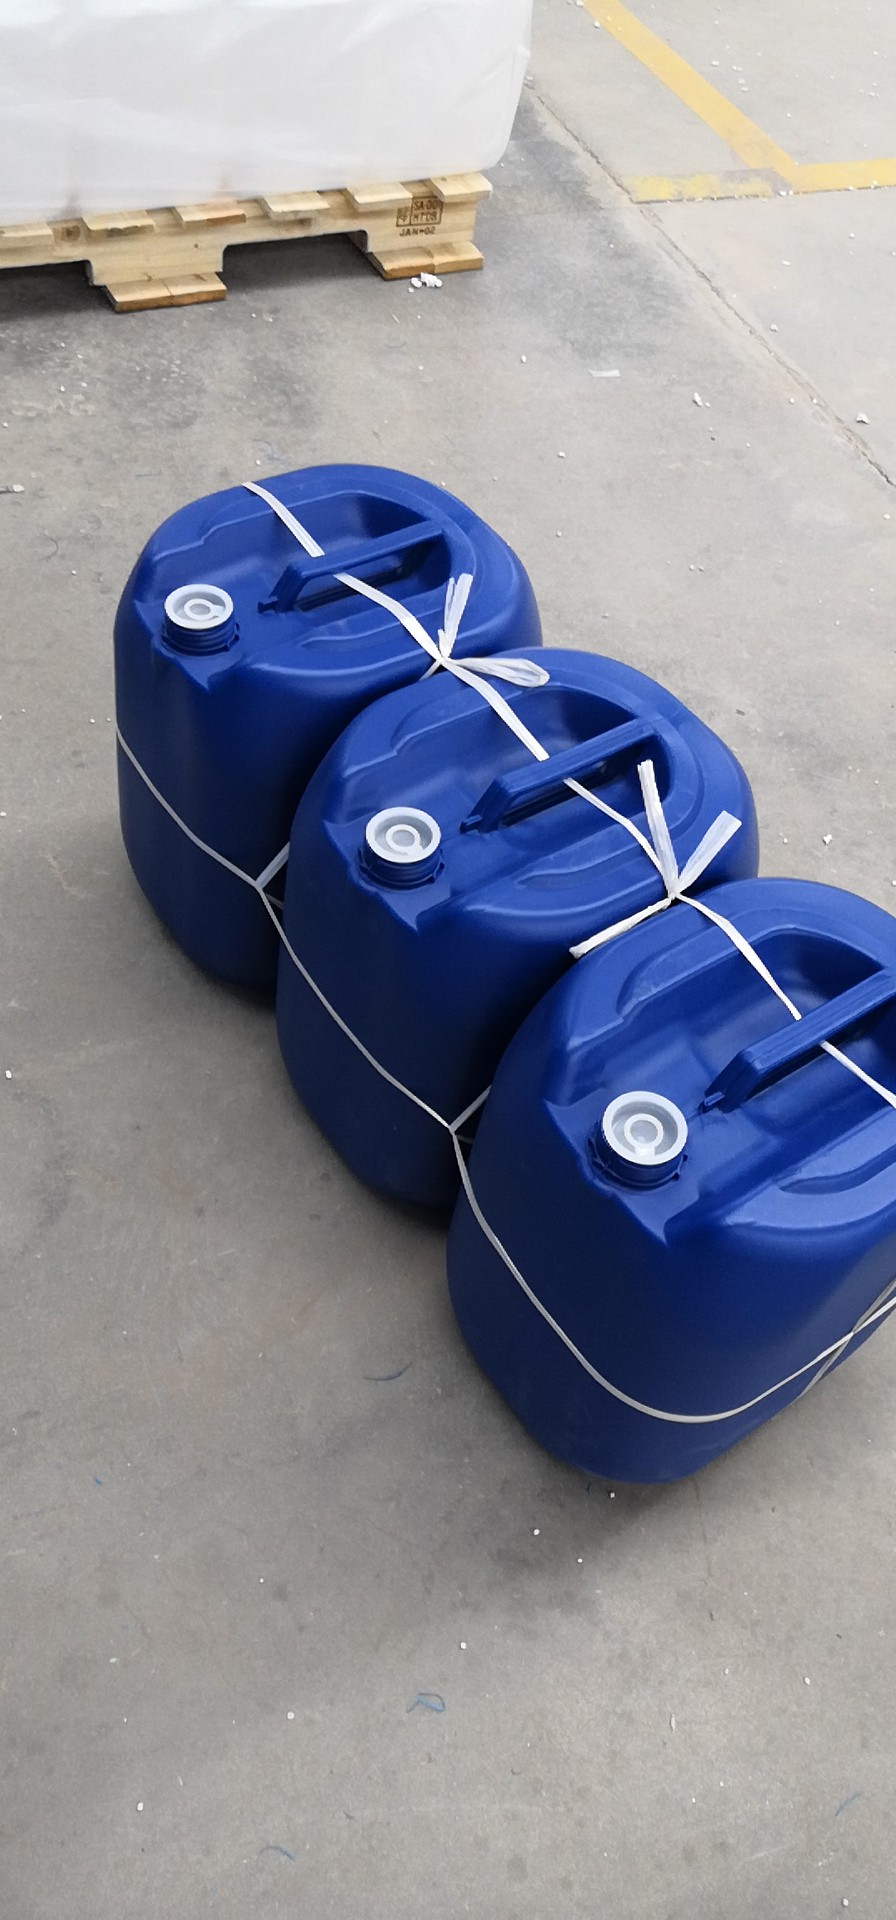 广东30升塑料桶|塑胶桶|塑料桶||包装桶|厂家直销|批发价格|哪家好|哪家便宜图片